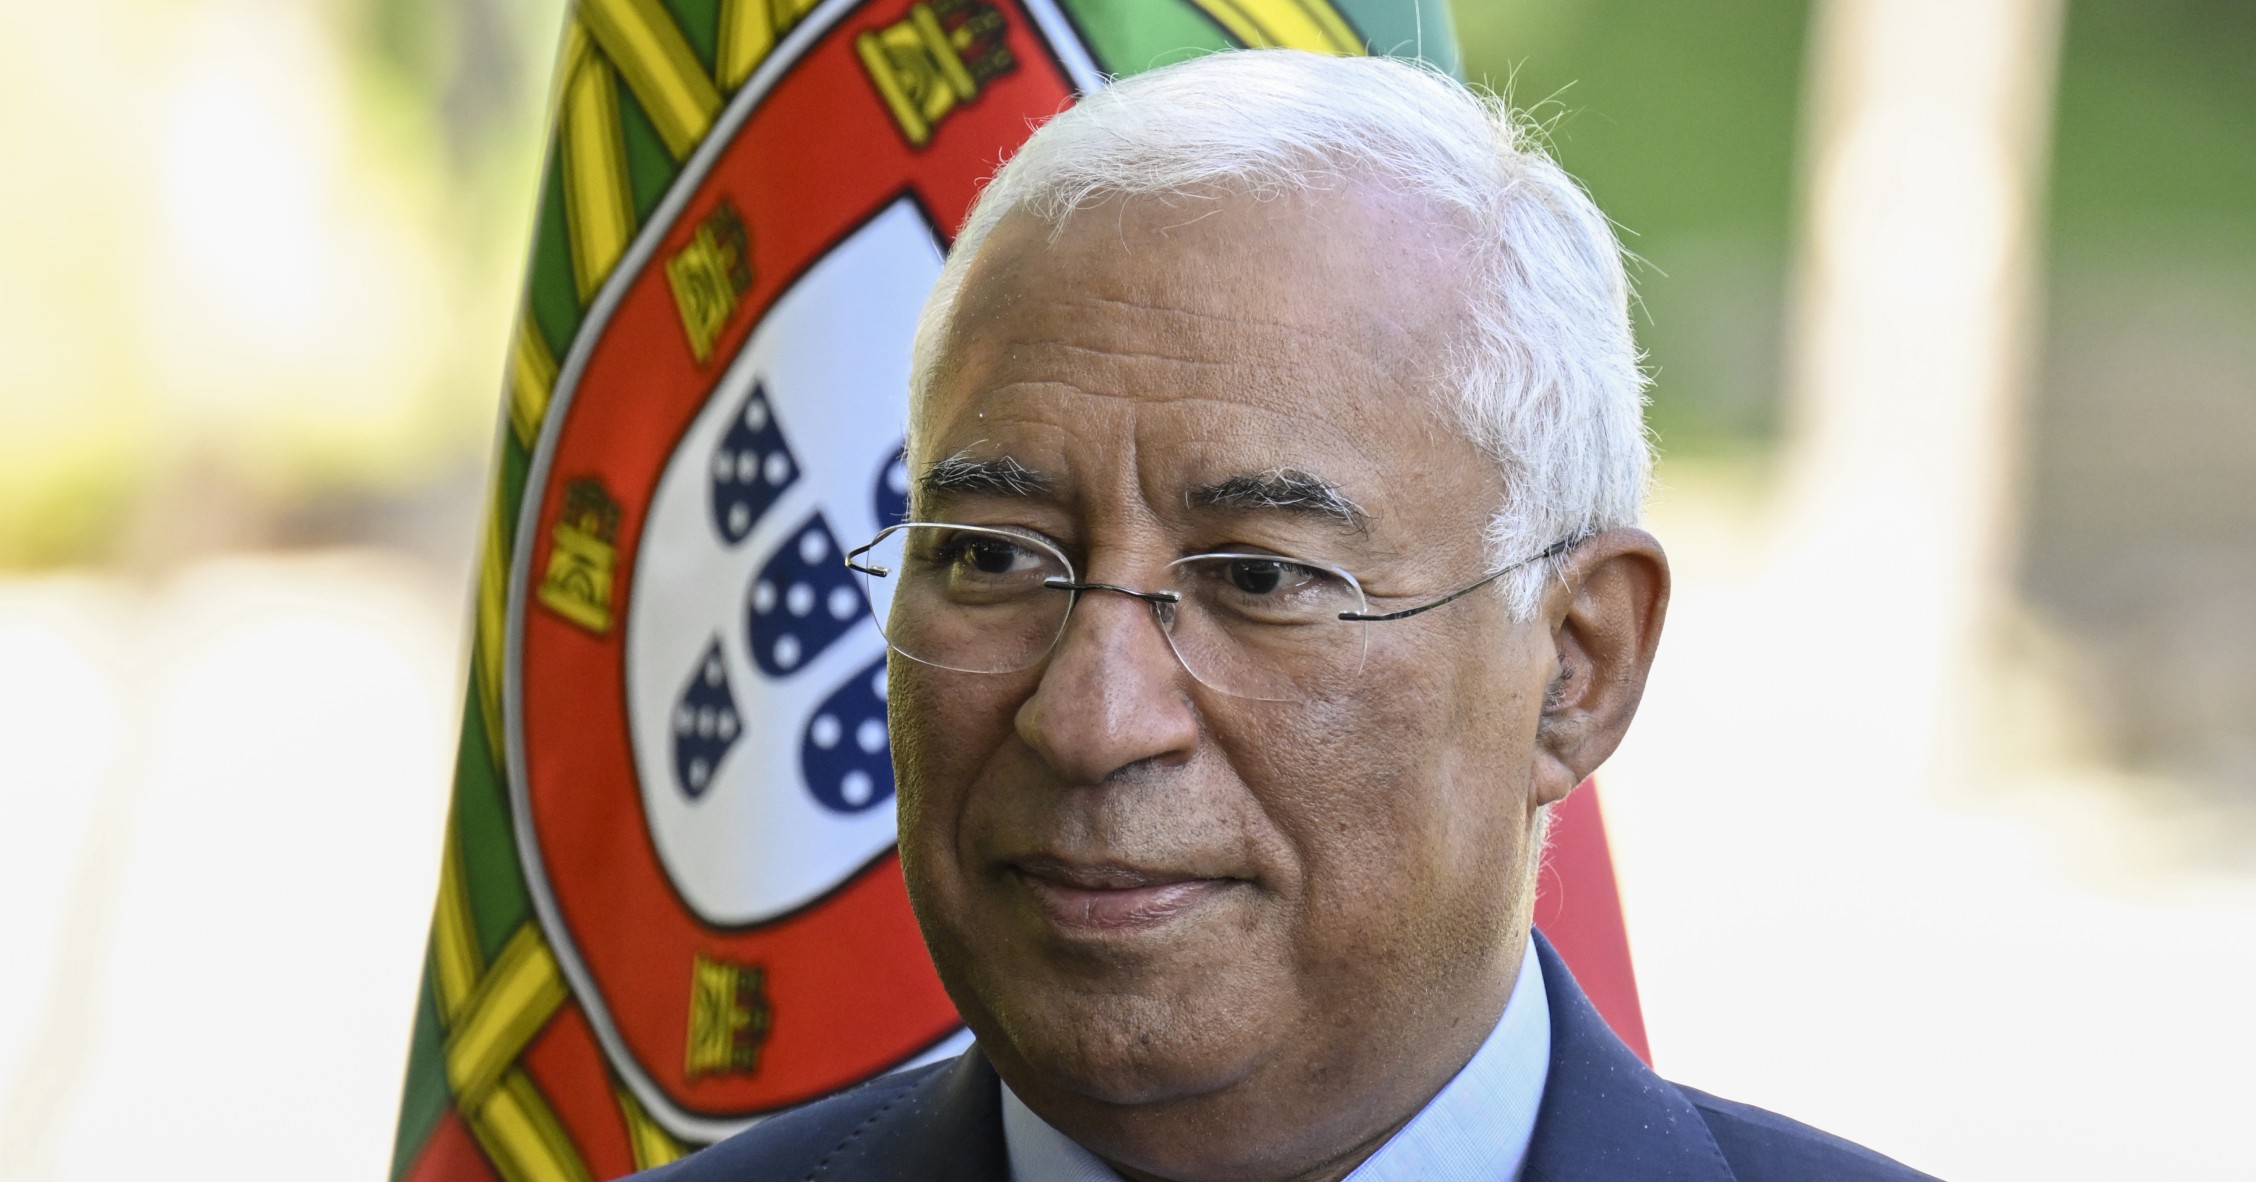 Portuguese PM António Costa resigns amid corruption probe